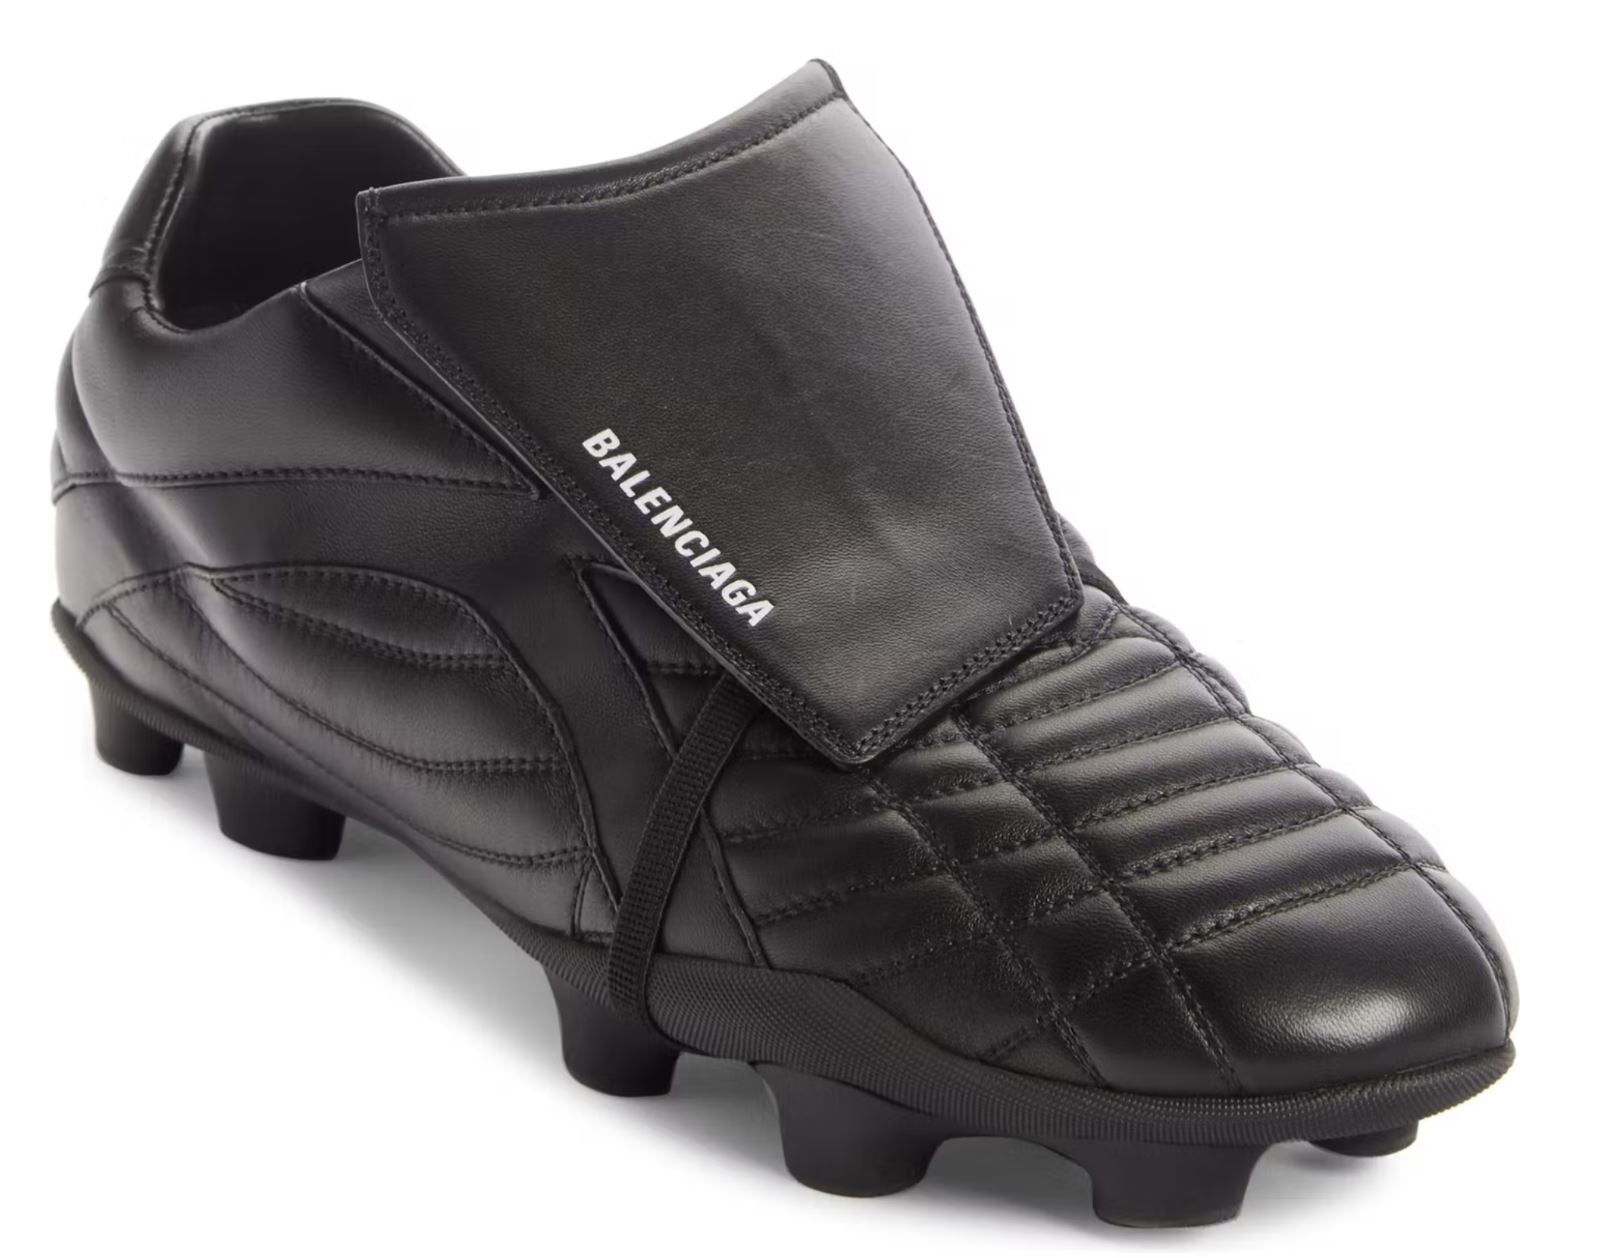 NIB 725 долларов США Balenciaga Женские кожаные кроссовки Socker Black 6 США (36 евро) 